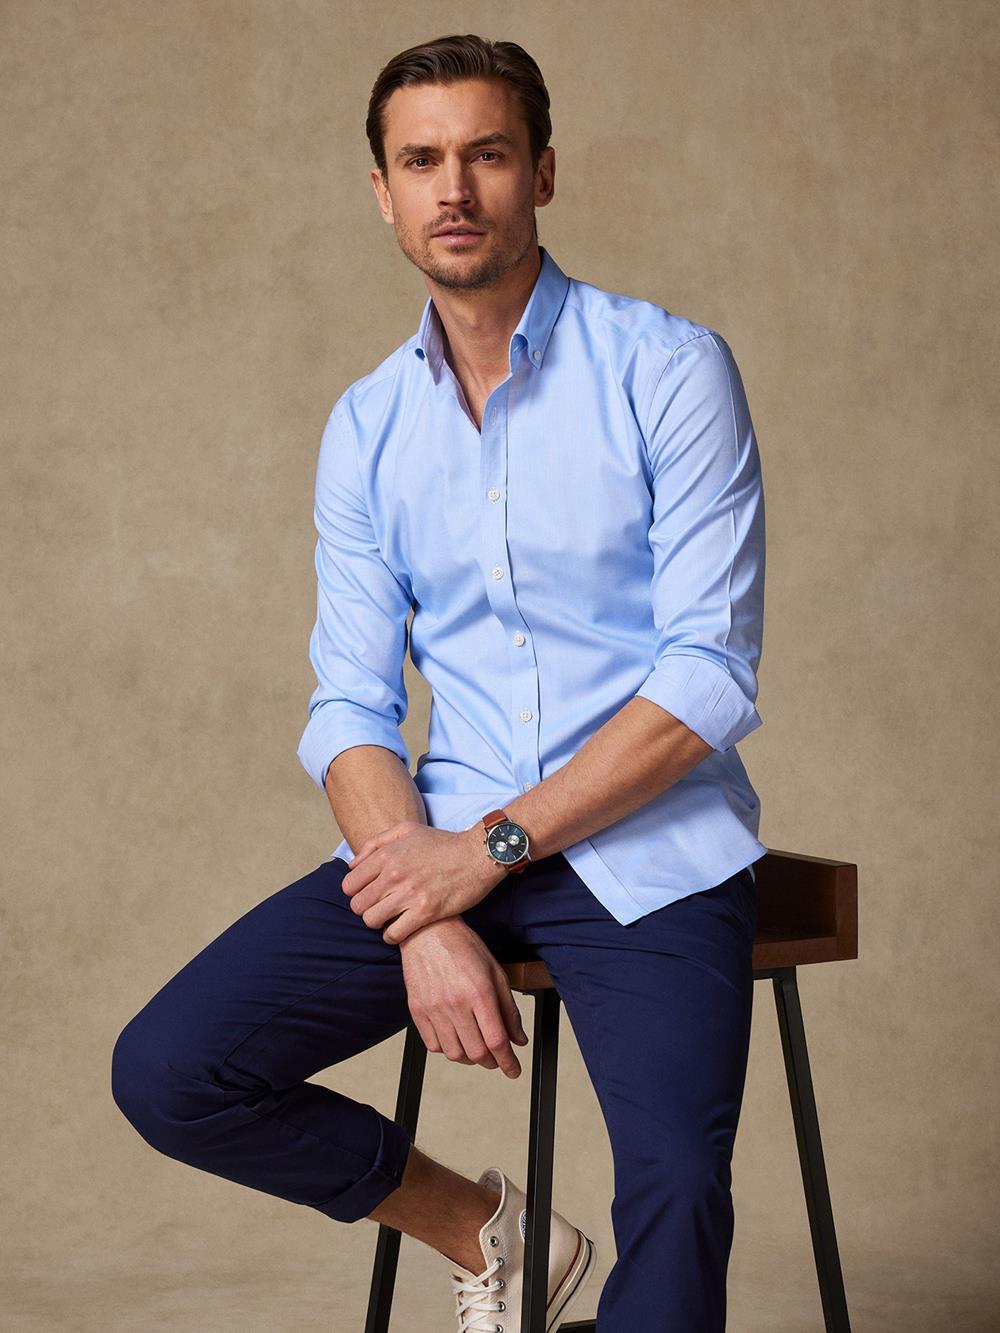 OxfordTailliertes Tailliertes Hemd himmelblau - Buttondown Kragen